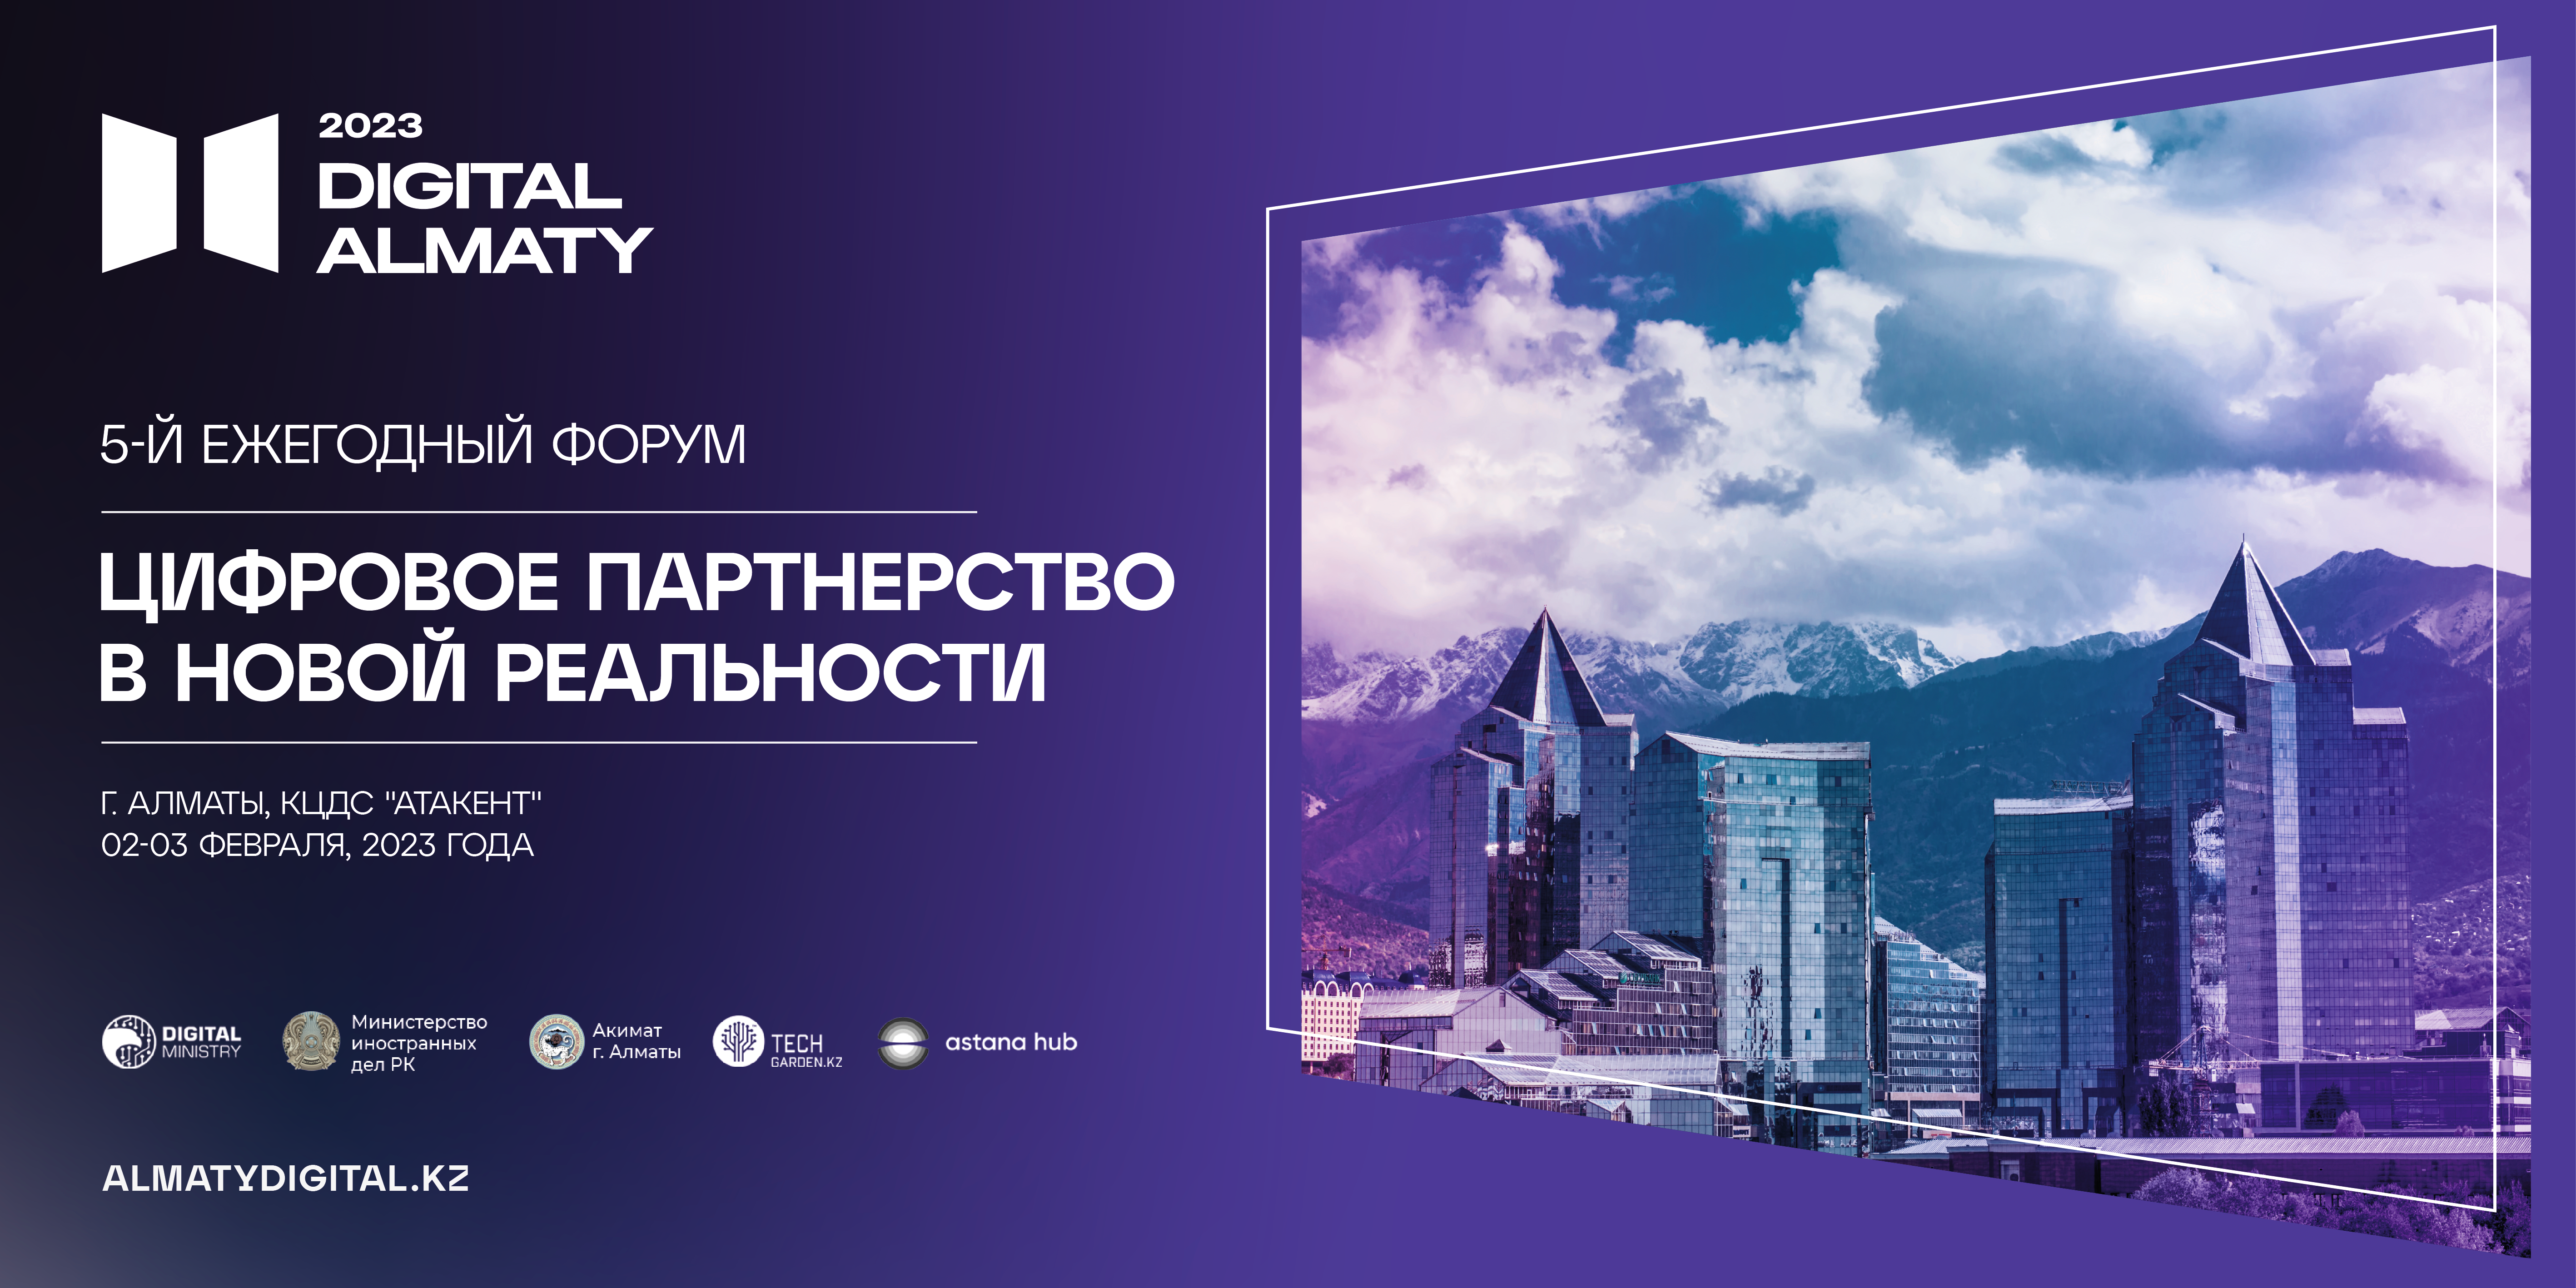 В Алматы пройдет юбилейный  цифровой форум Digital Almaty 2023